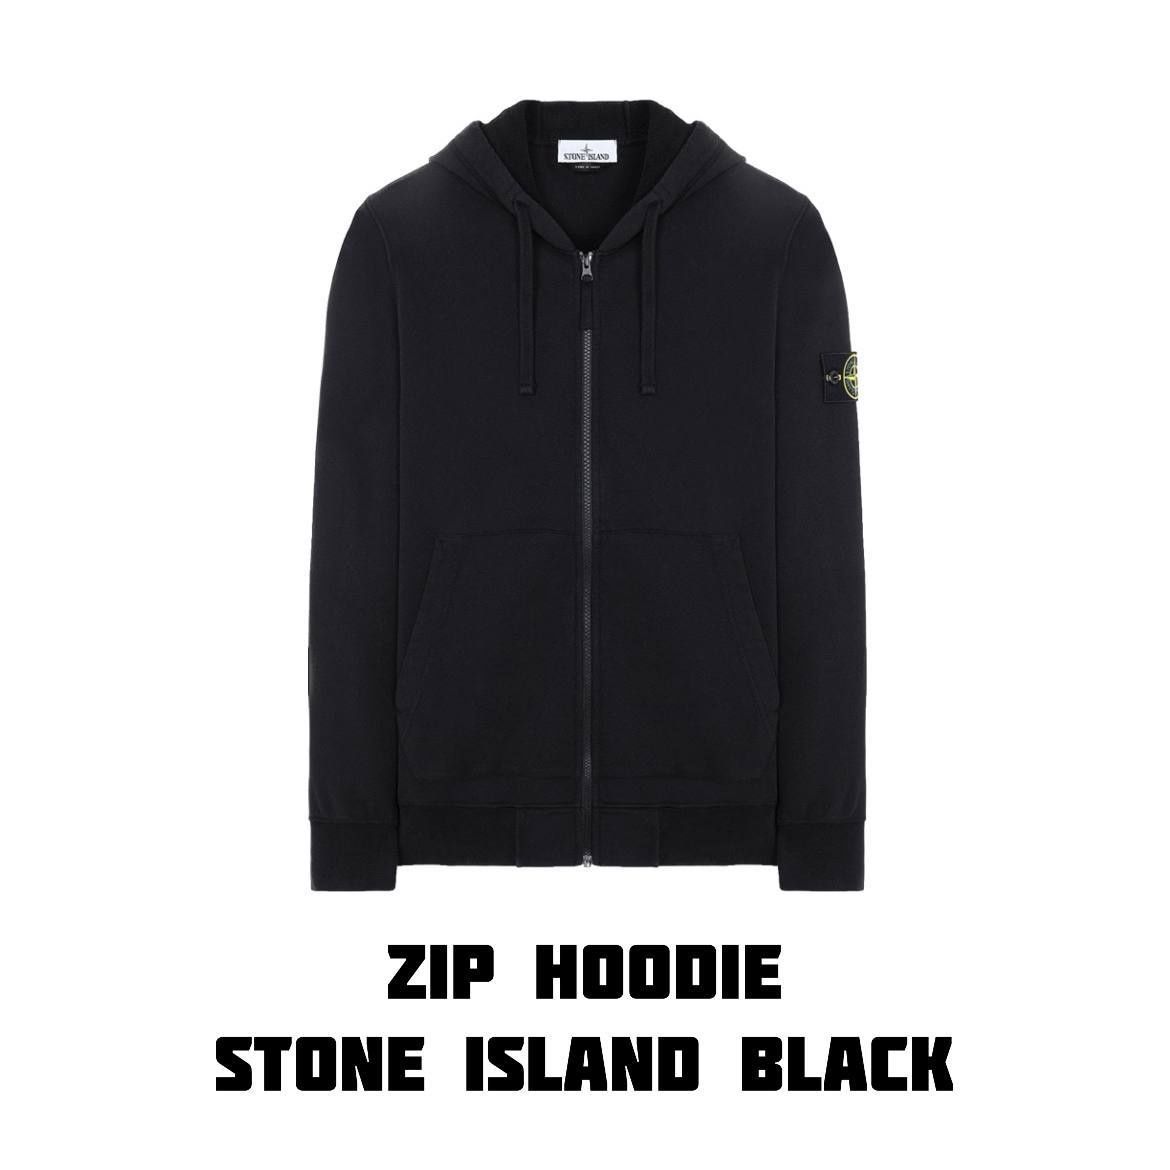 STONE ISLAND black zip hoodie